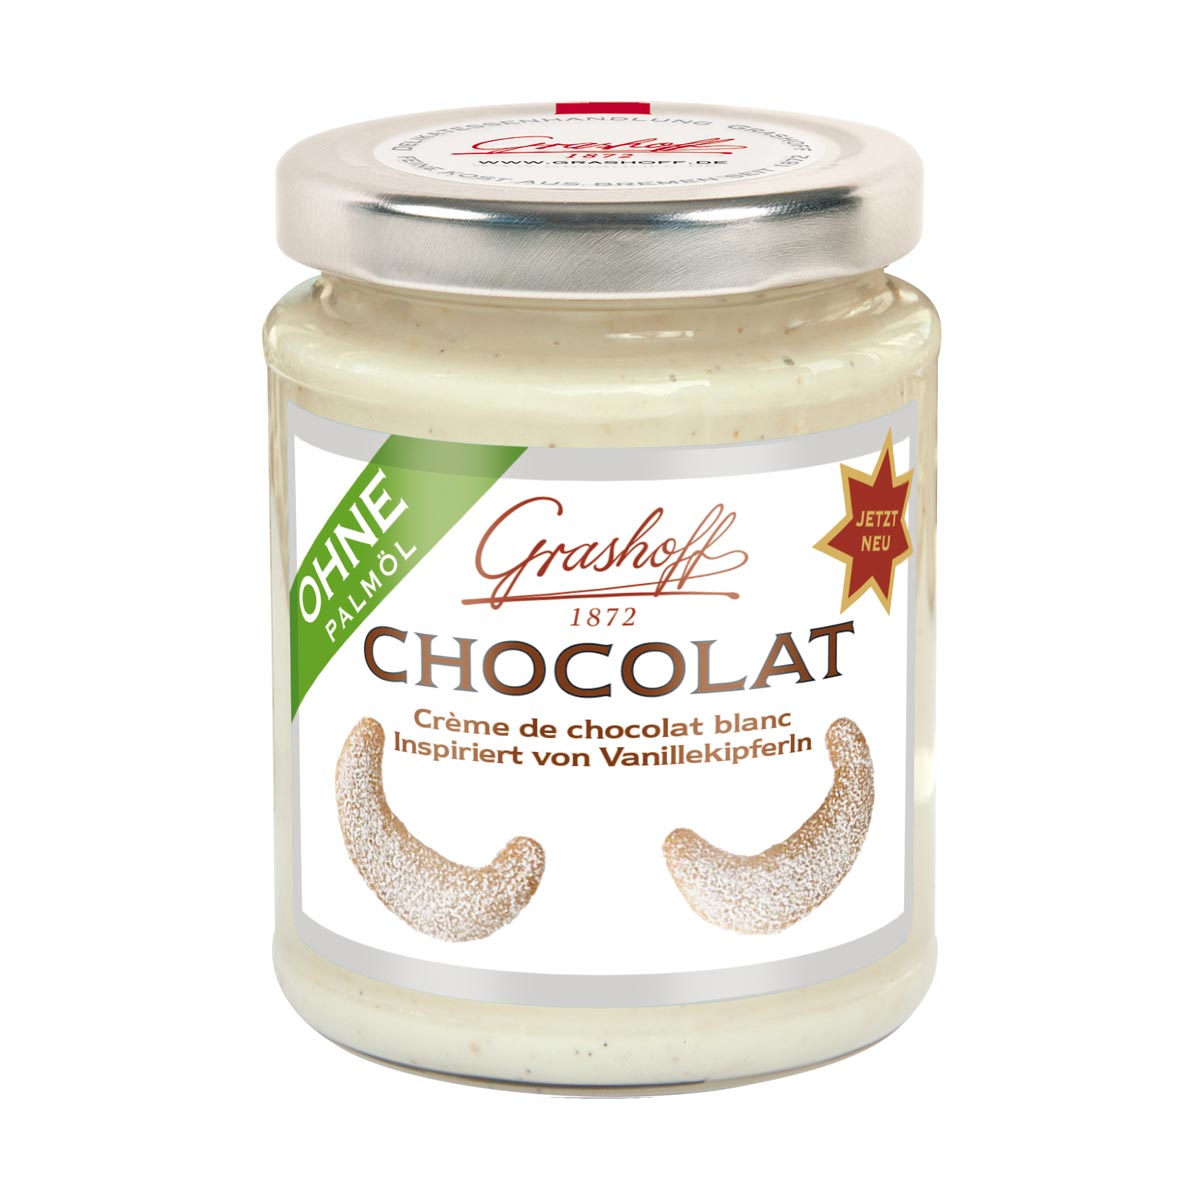 Cioccolato bianco ispirato alle mezzelune di vaniglia